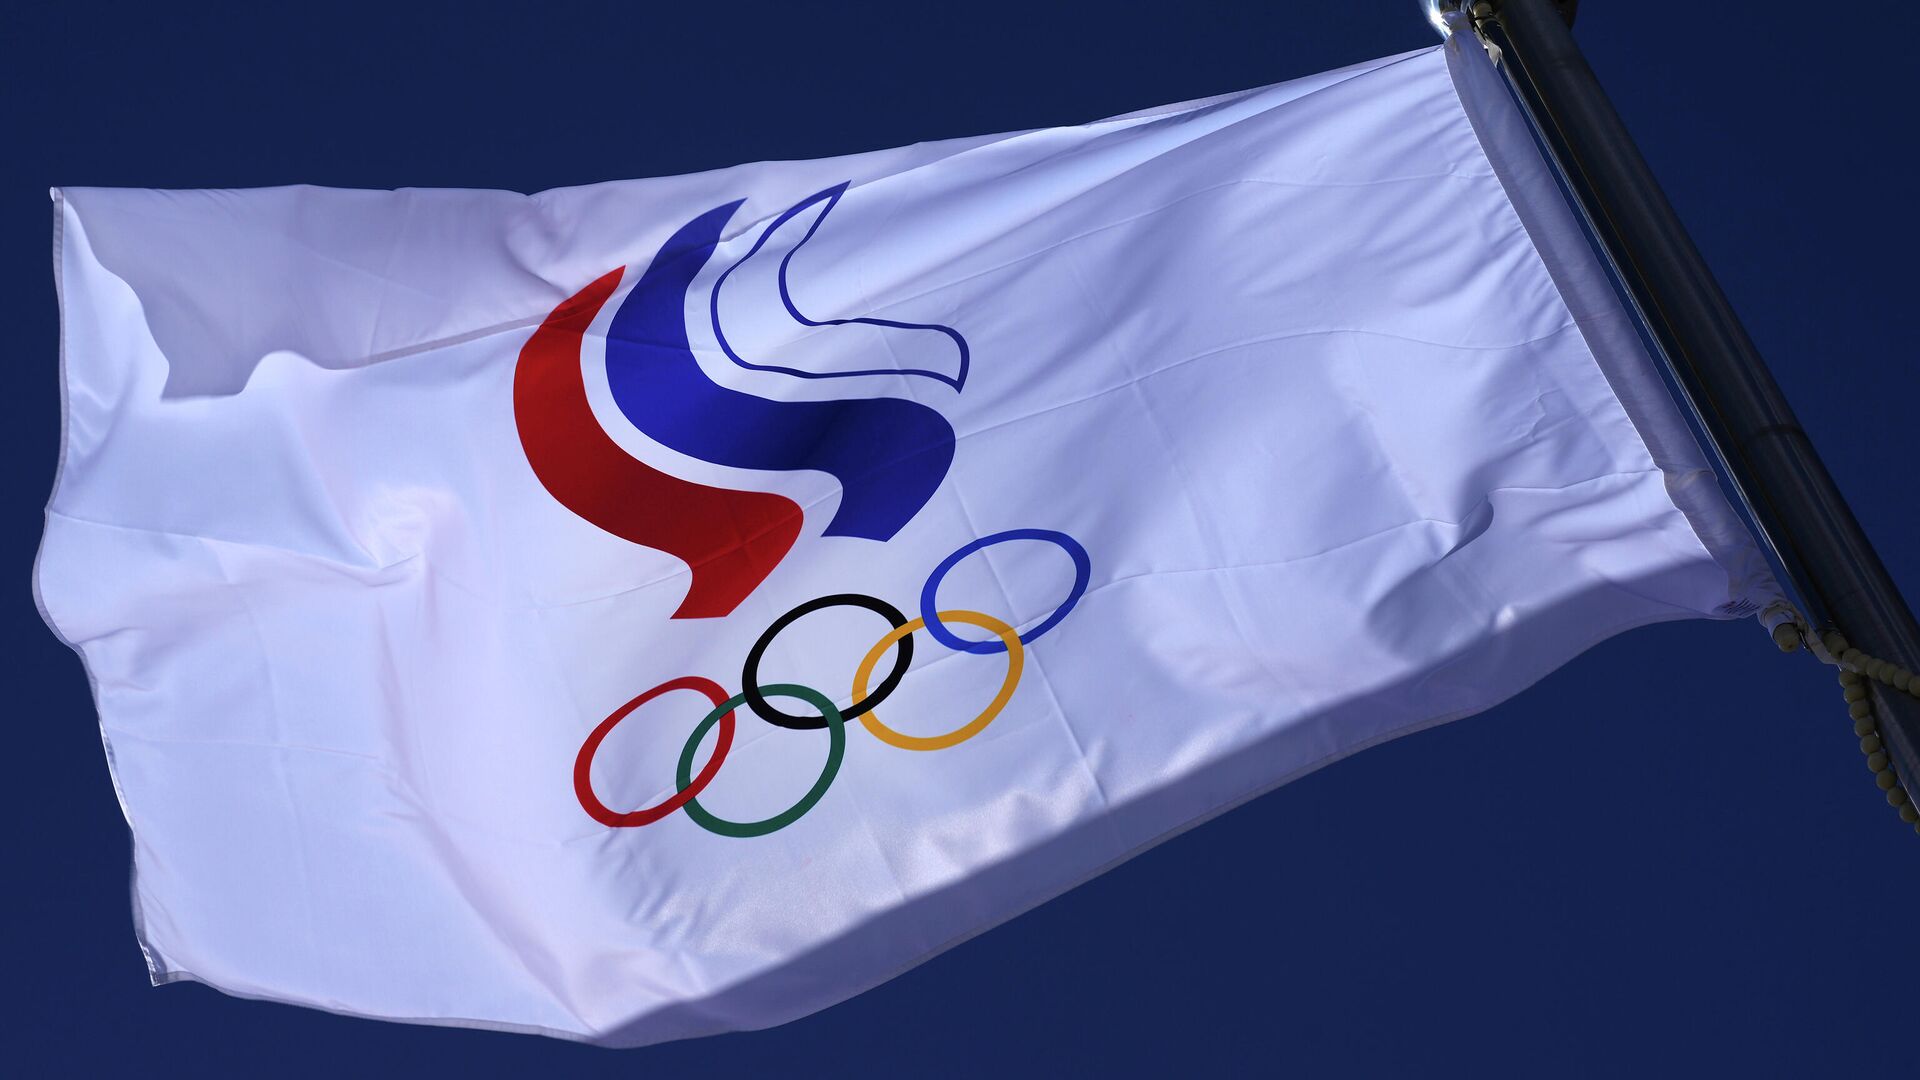 ОКР предупредил атлетов, что МОК может ввести новые параметры отбора на Олимпиаду